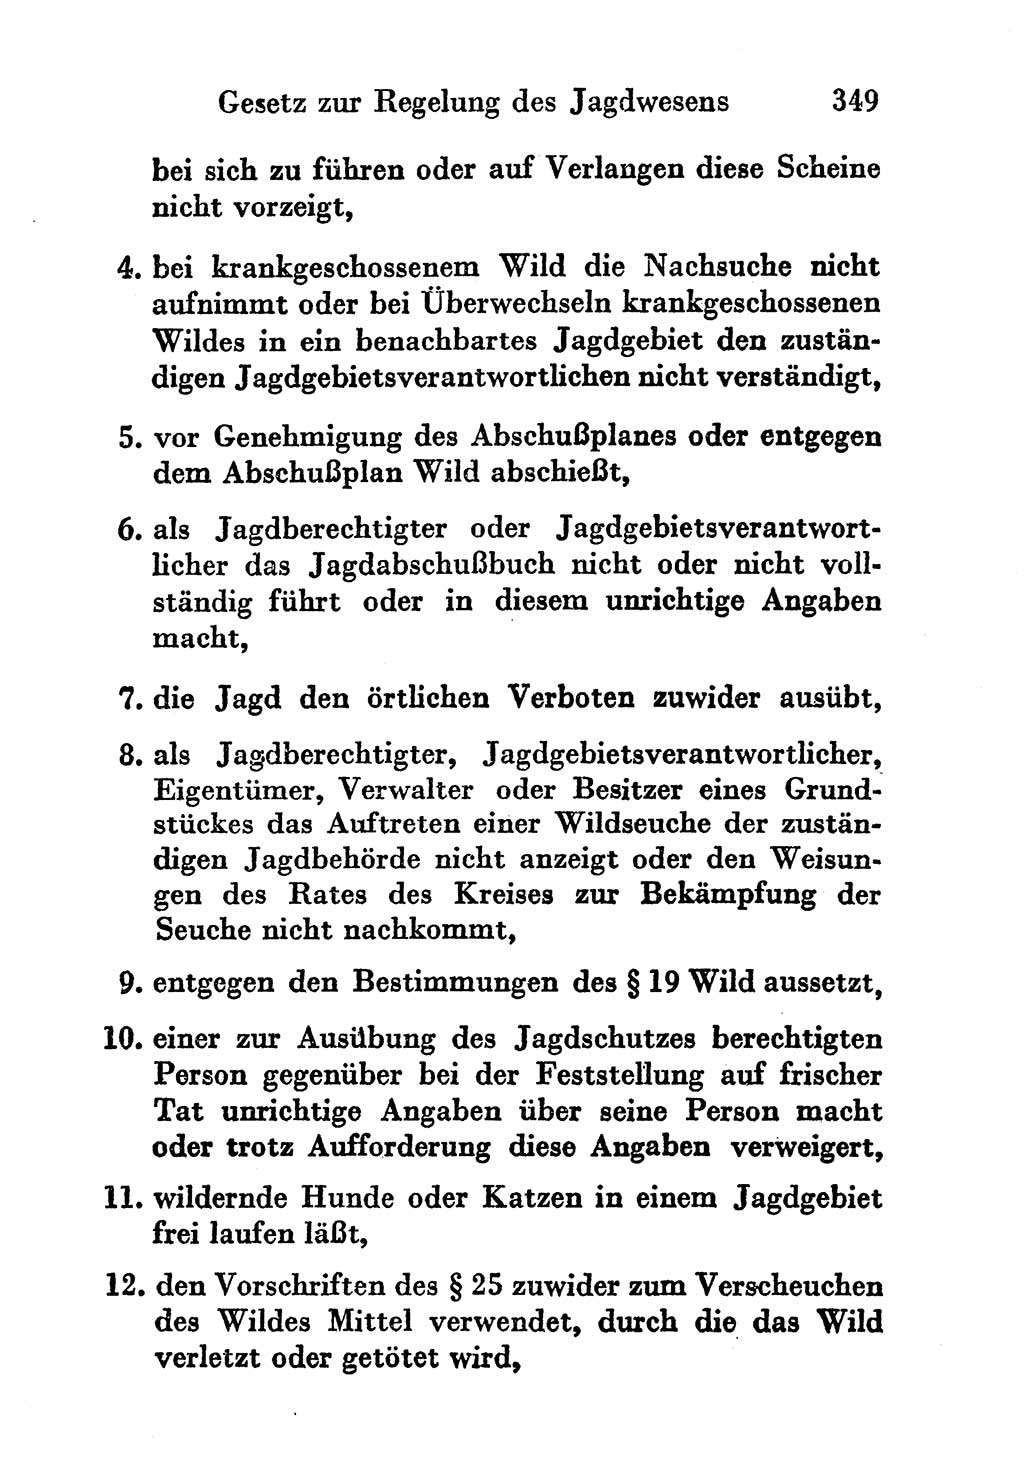 Strafgesetzbuch (StGB) und andere Strafgesetze [Deutsche Demokratische Republik (DDR)] 1956, Seite 349 (StGB Strafges. DDR 1956, S. 349)